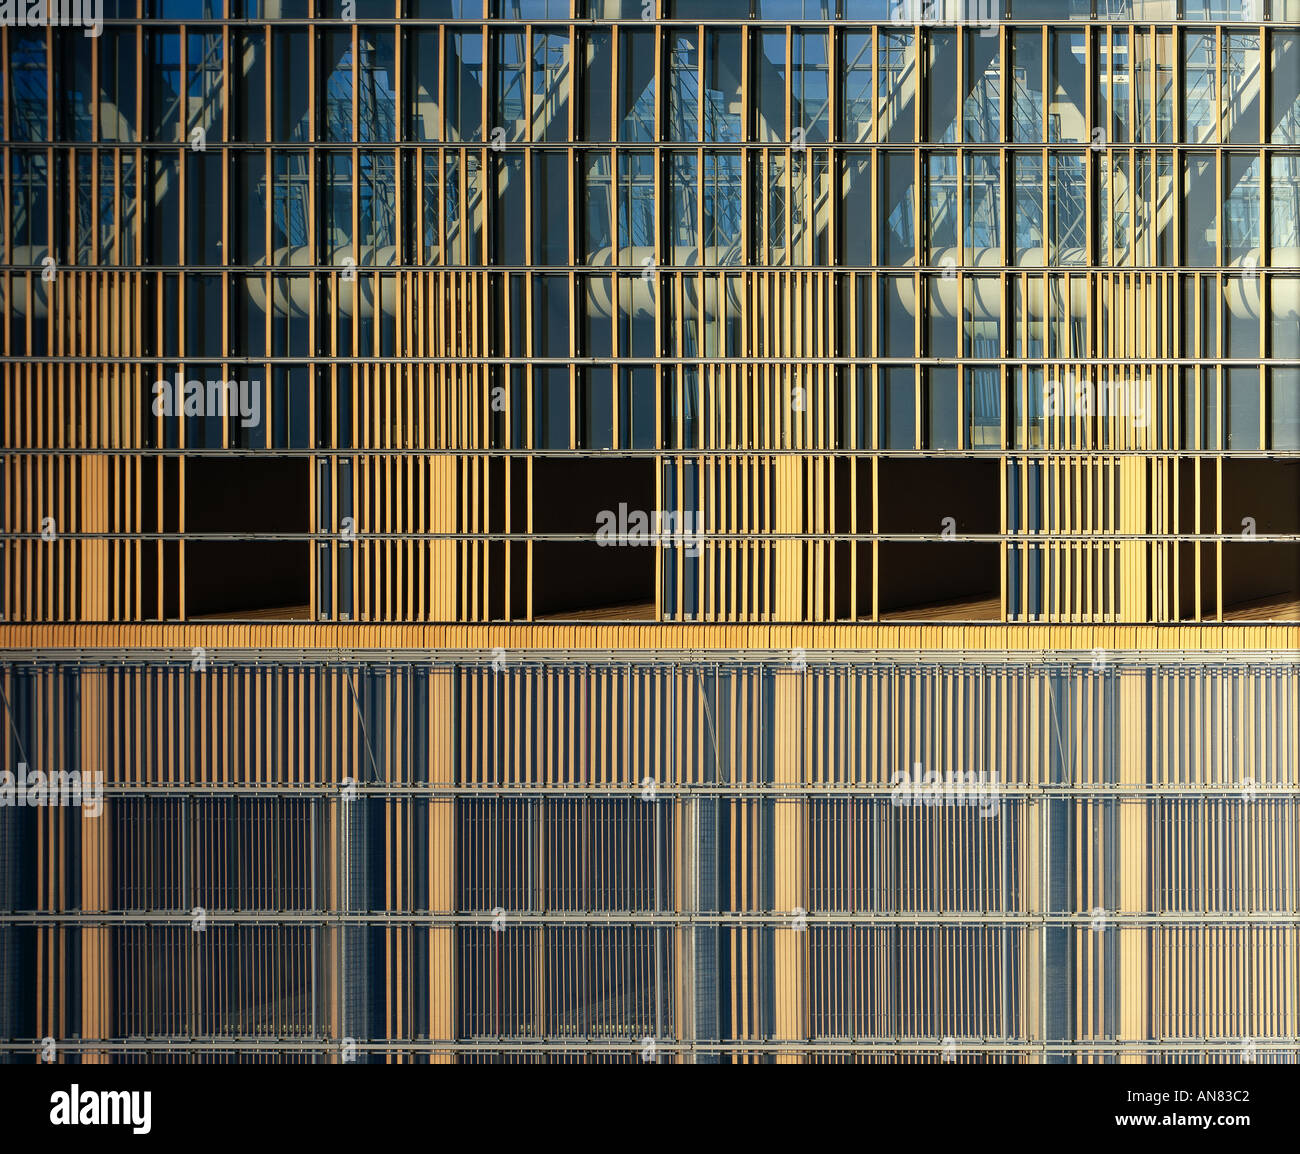 La Postdamer Platz, Berlin. Dettaglio di Debis Torre. Architetto: Renzo Piano Building Workshop Foto Stock